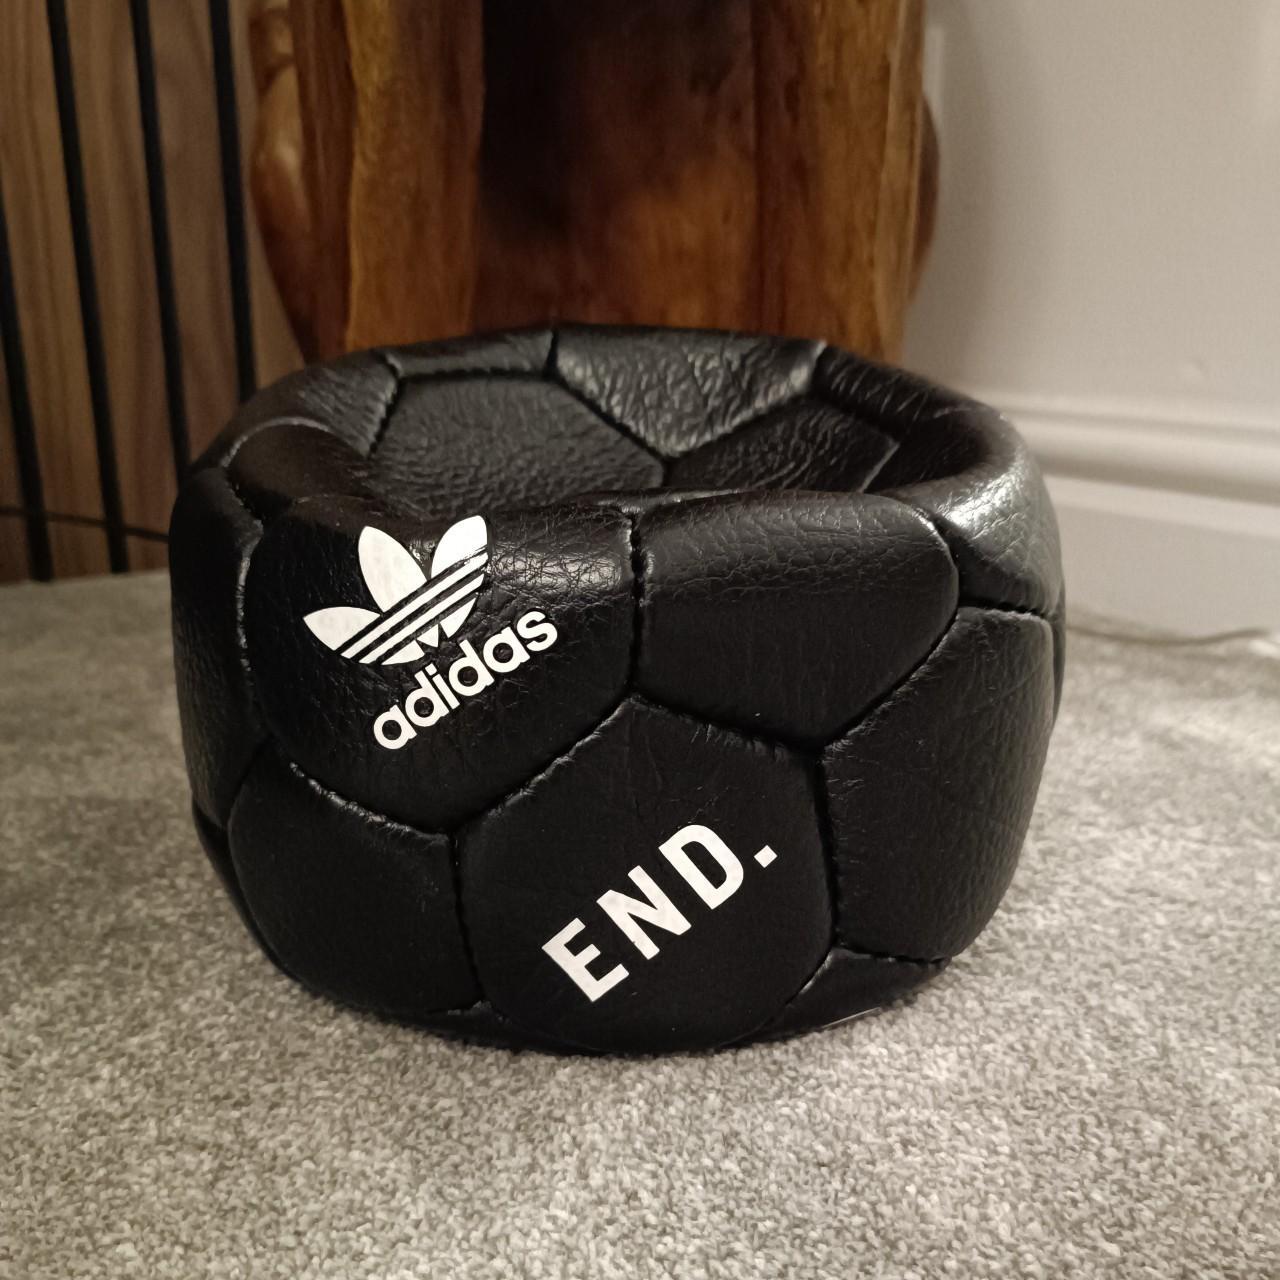 NEIGHBORHOOD END adidas Home Football - サッカーボール